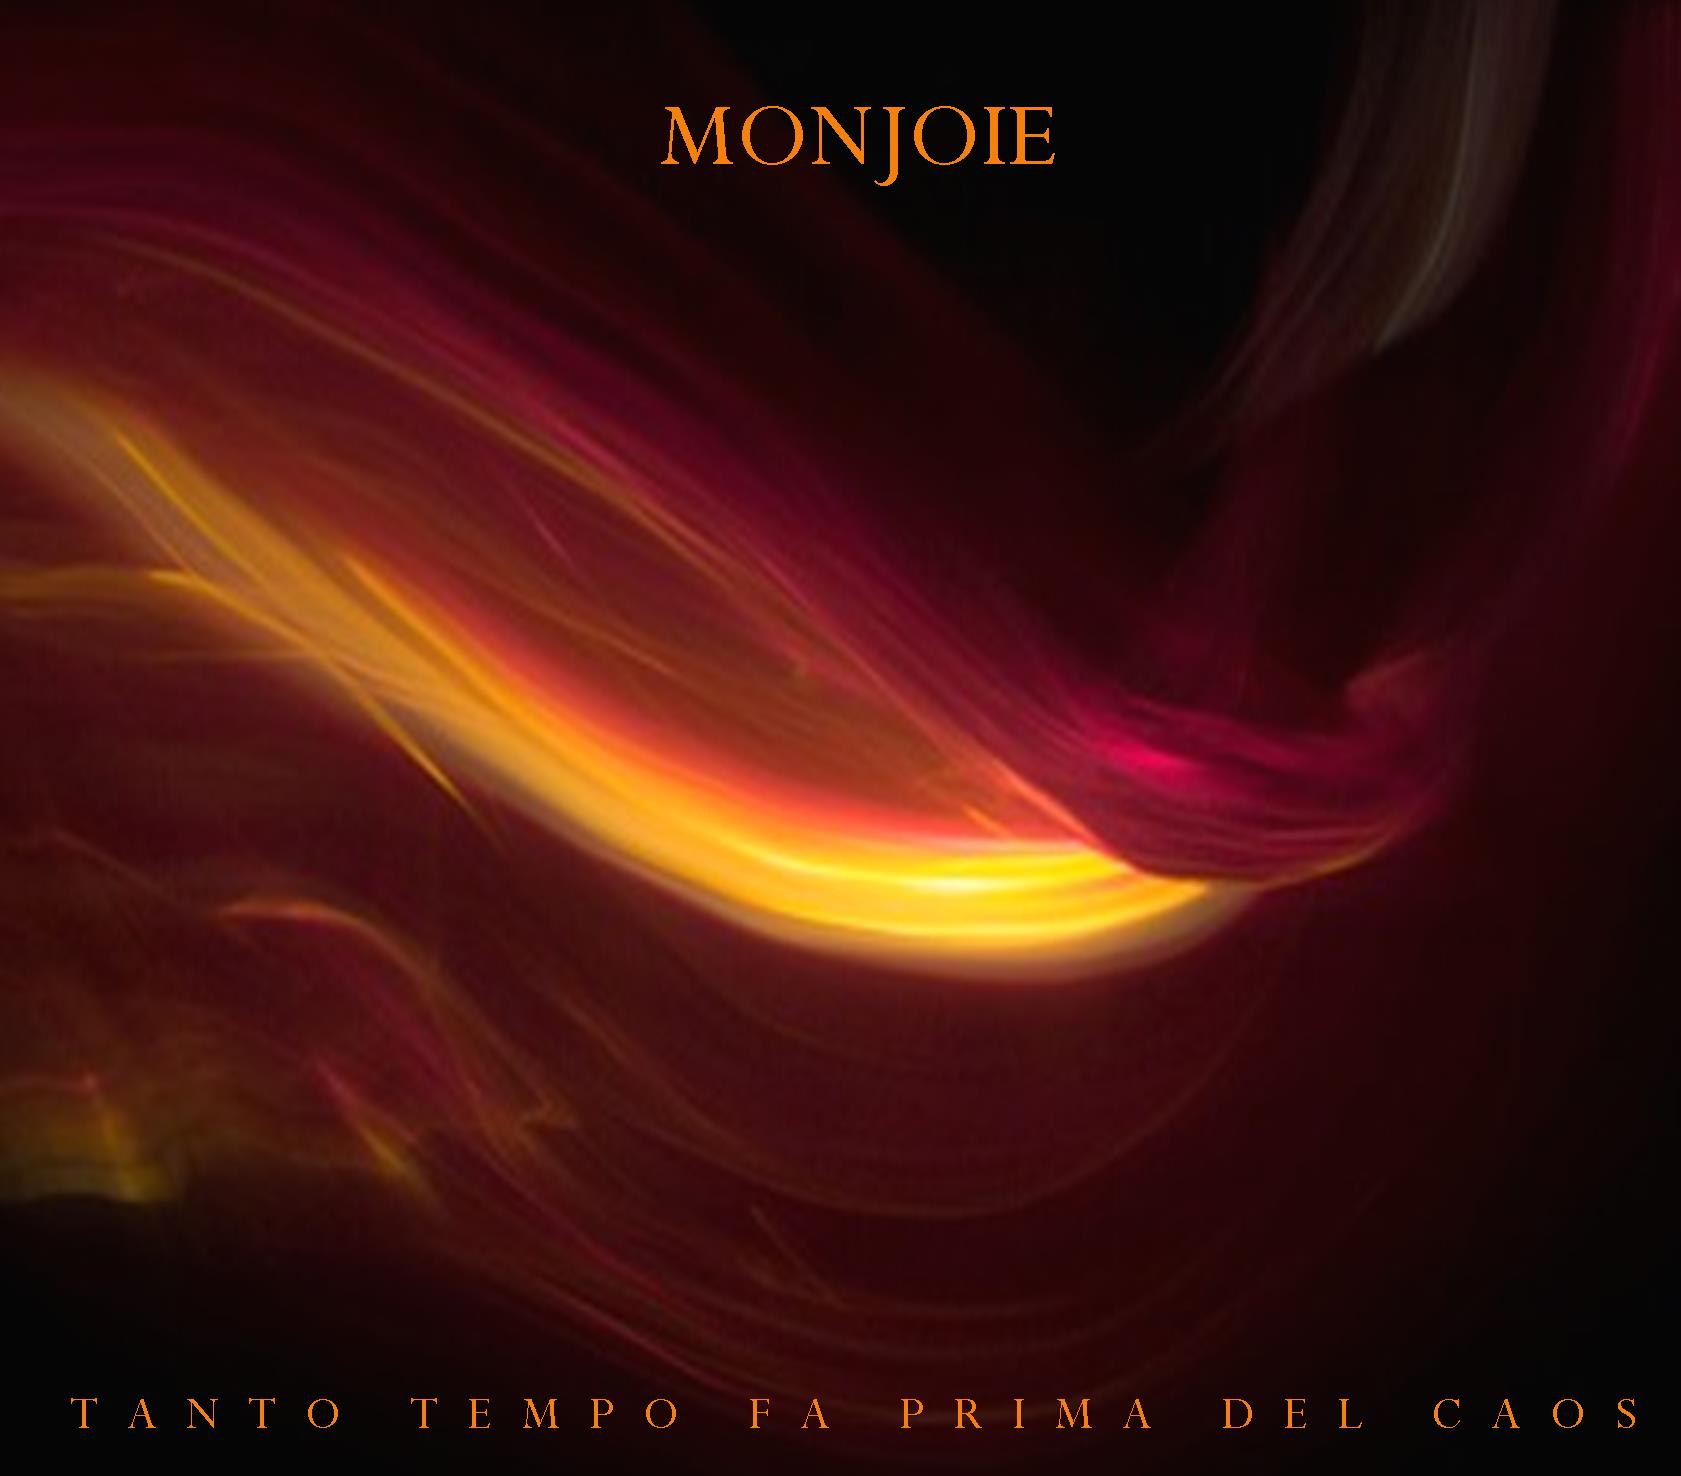 MONJOIE - "Tanto tempo fa prima del caos" CD